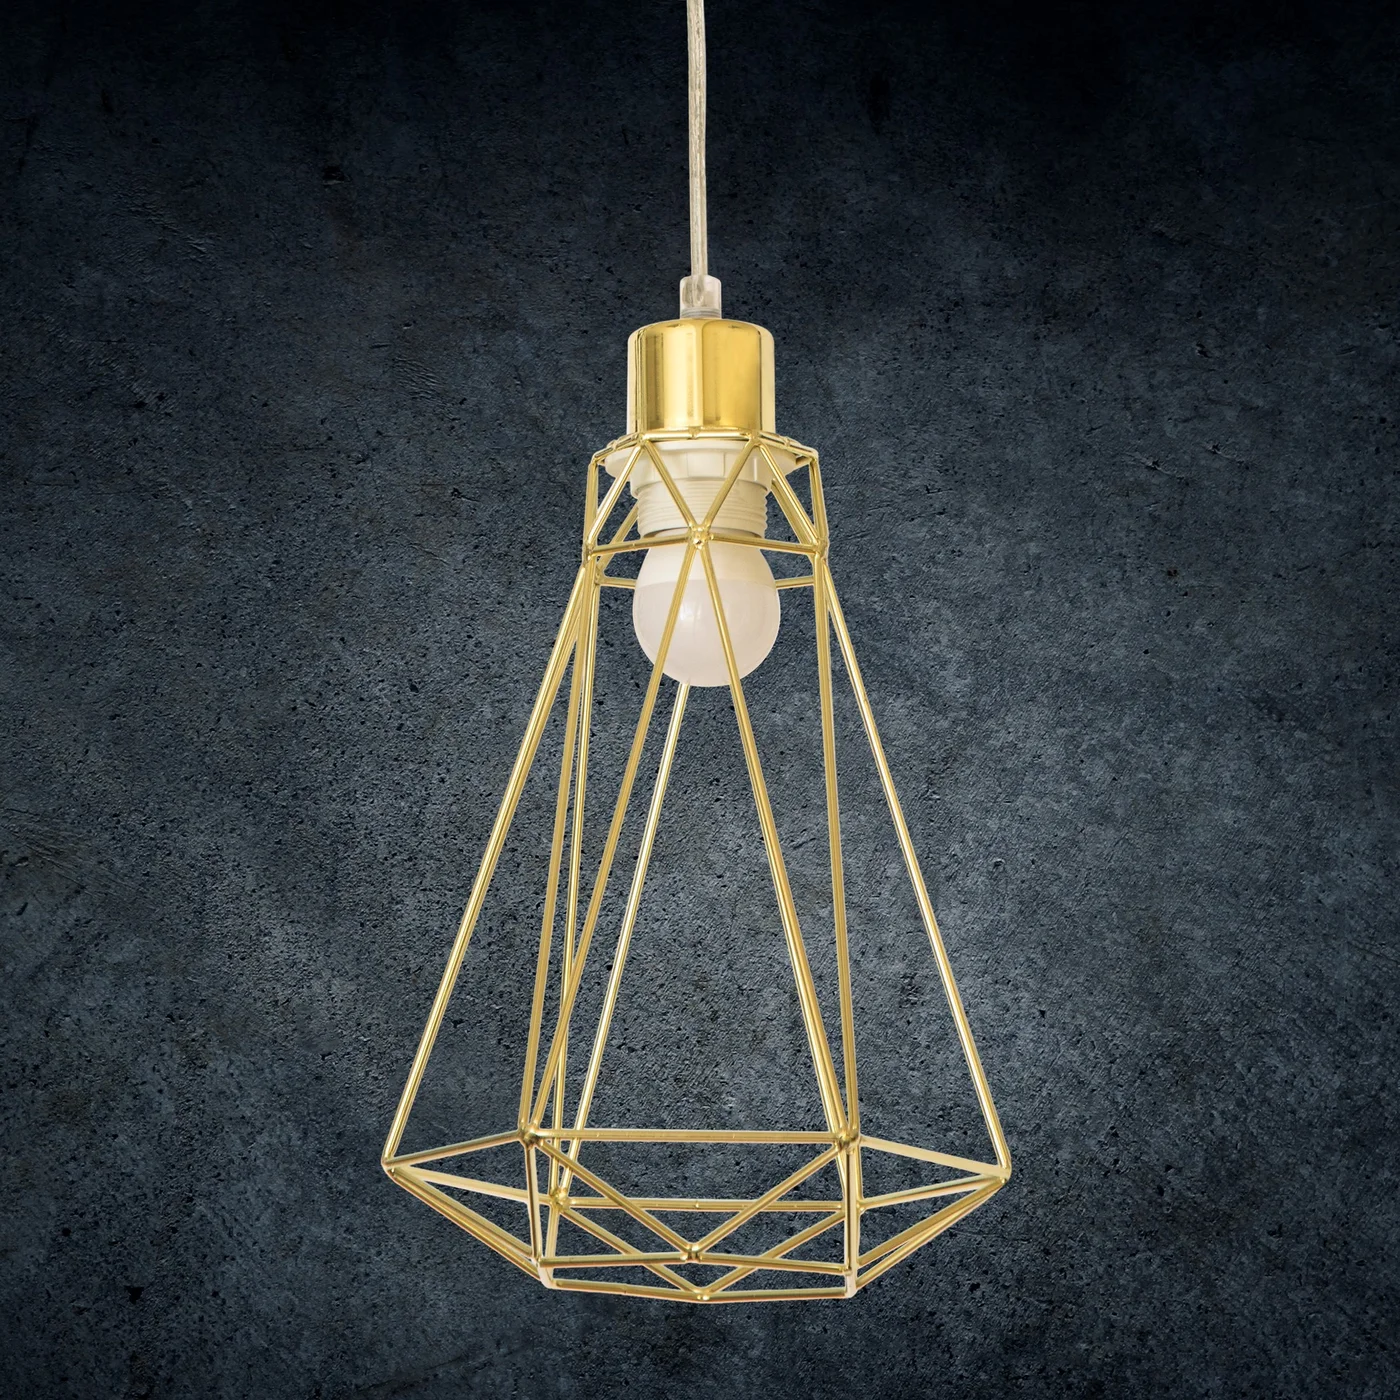 Lampa WIRE z metalowym kloszem o nowoczesnej geometrycznej formie